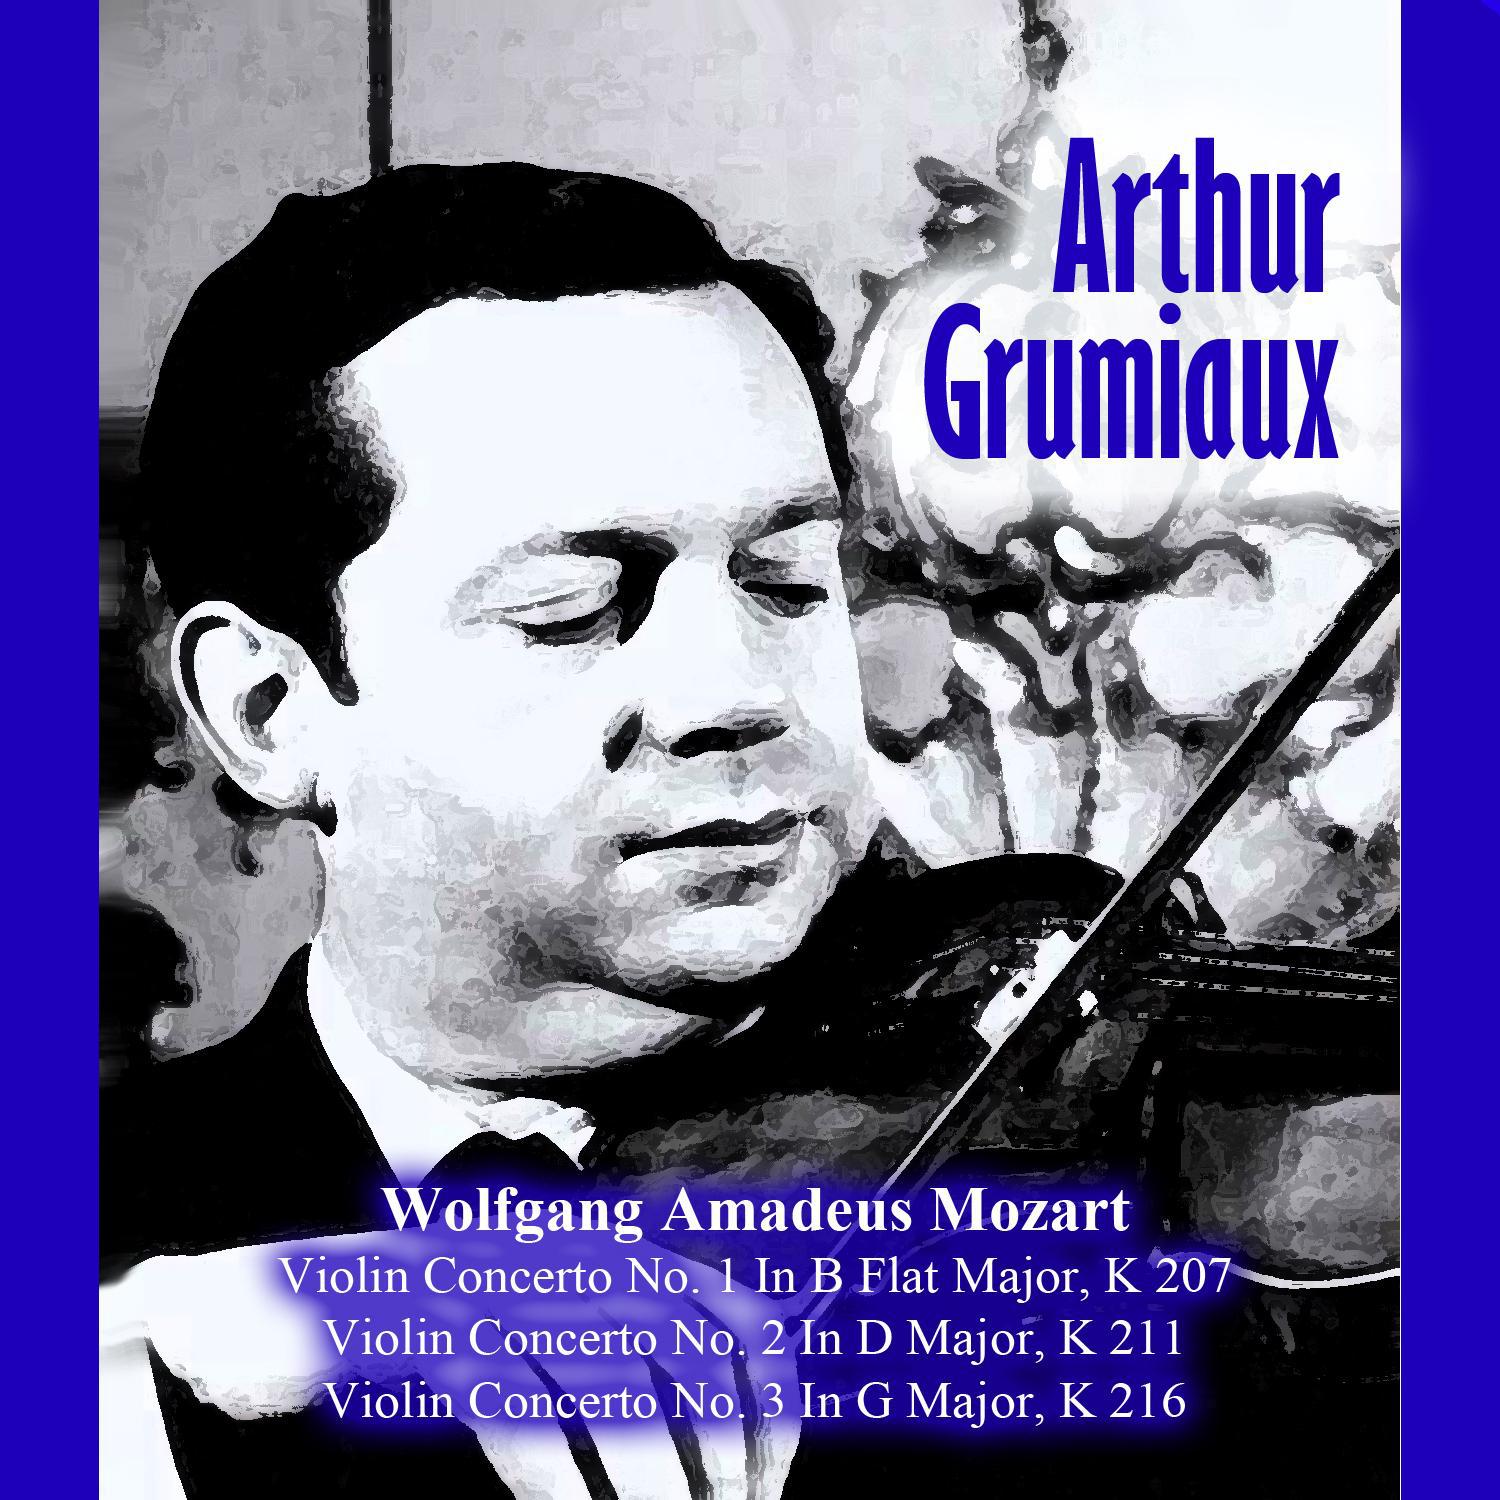 Violin Concerto No. 2 In D Major, K 211: I. Allegro moderato